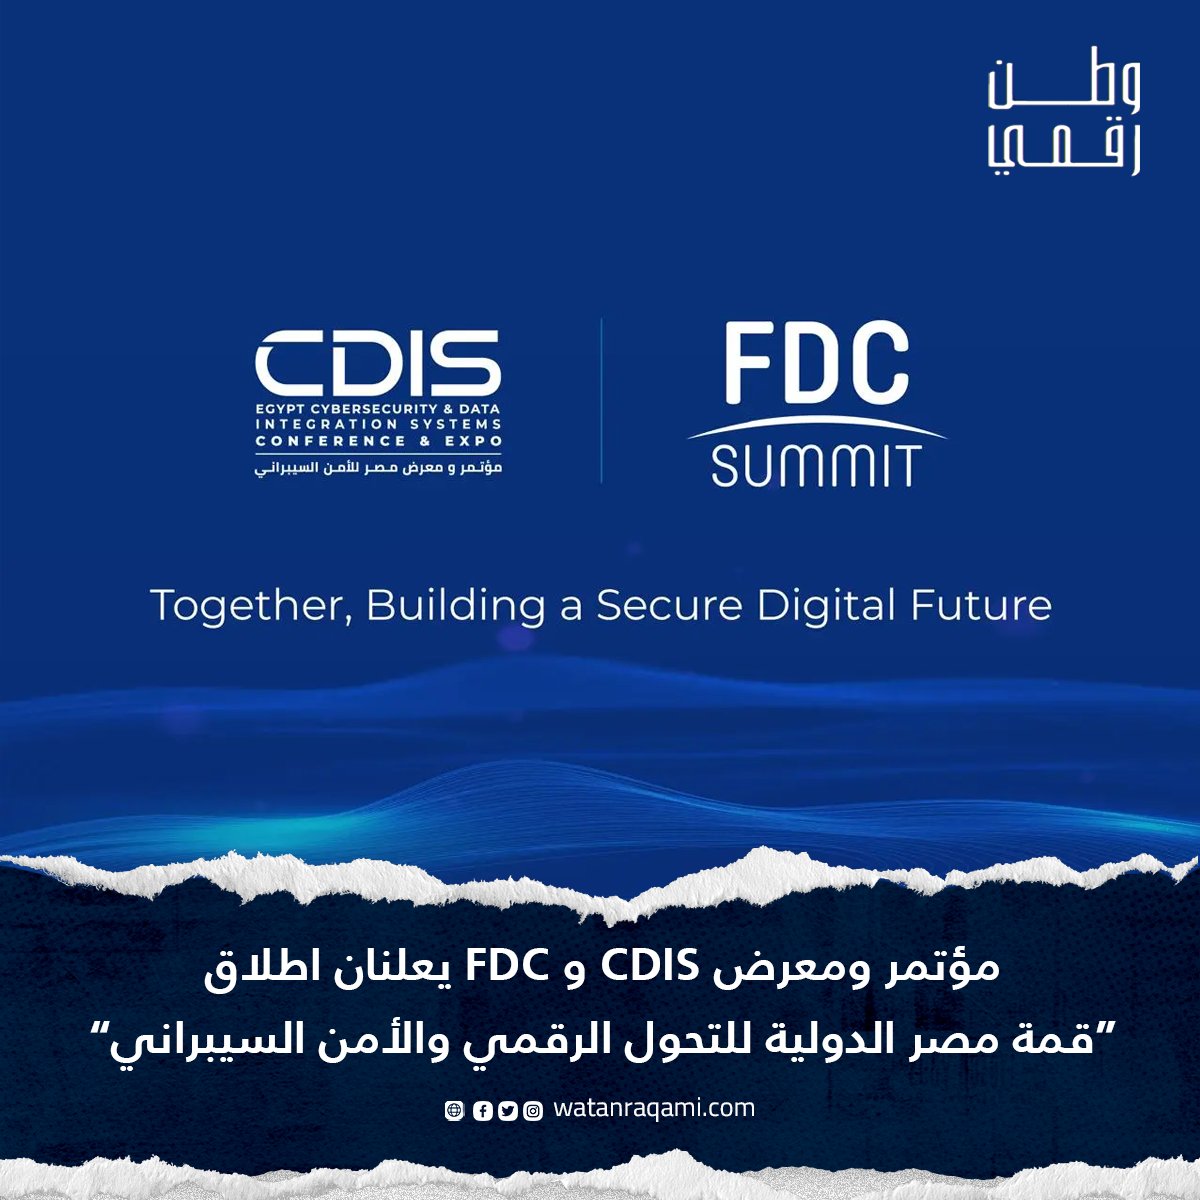 مؤتمر ومعرض CDIS و FDC يعلنان اطلاق “قمة مصر الدولية للتحول الرقمي والأمن السيبراني”
tinyurl.com/55ruas2h